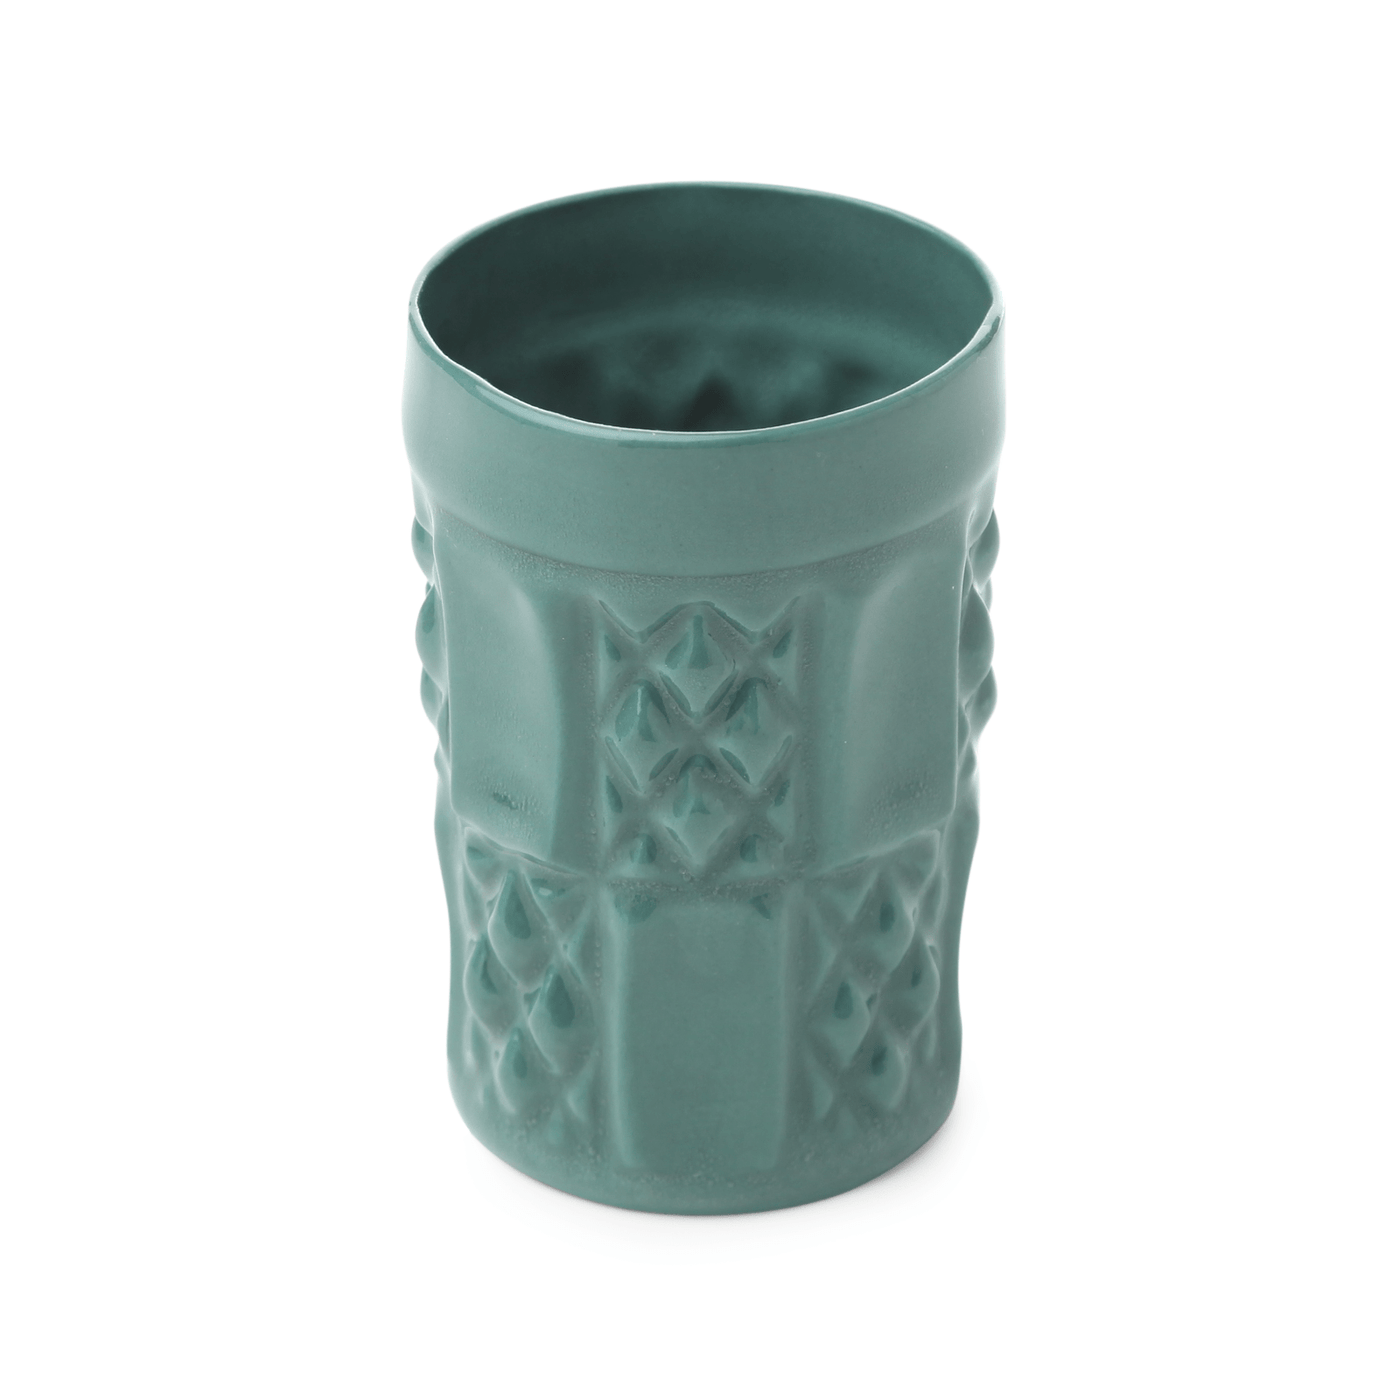 Reva Handmade Mug, Green, 190 ml Cups & Mugs sazy.com